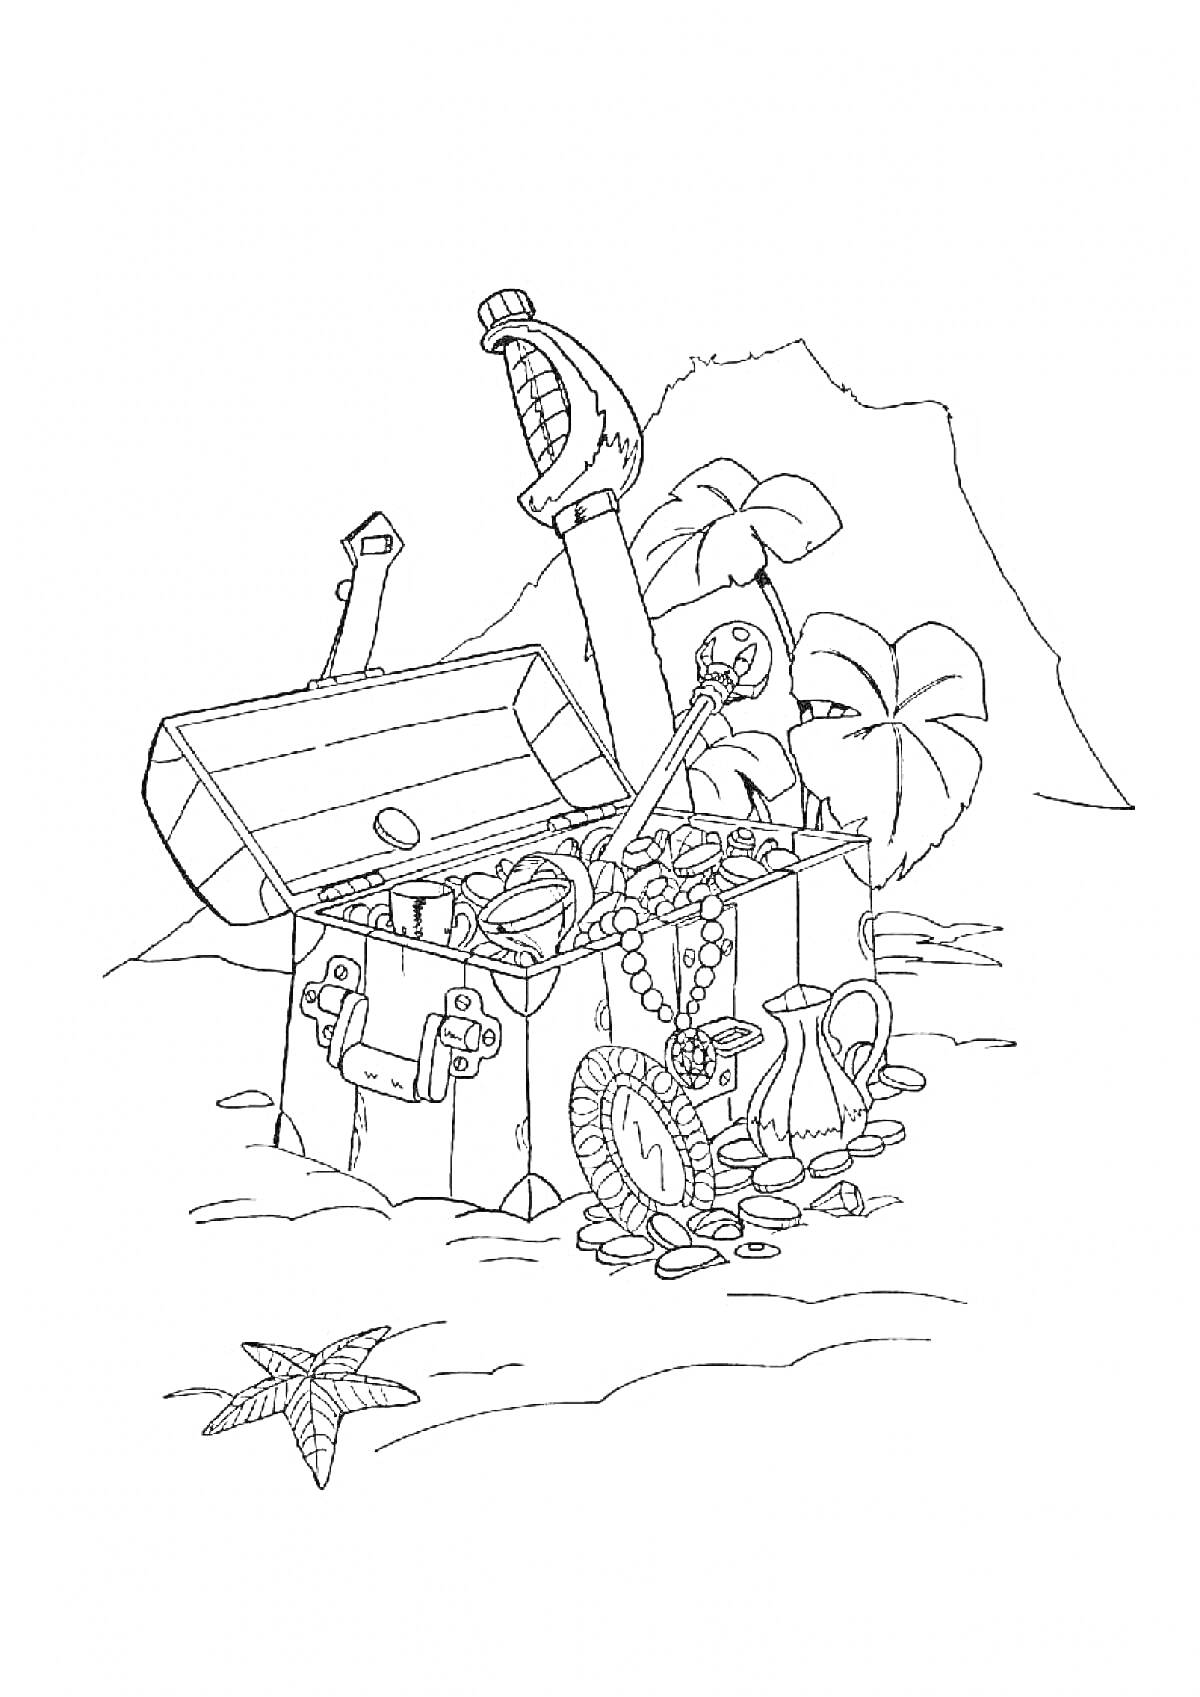 Сундук с сокровищами на острове (сундук, сокровища, монеты, меч, пальма, скала, песок, ракушка, горшки, звездное море)